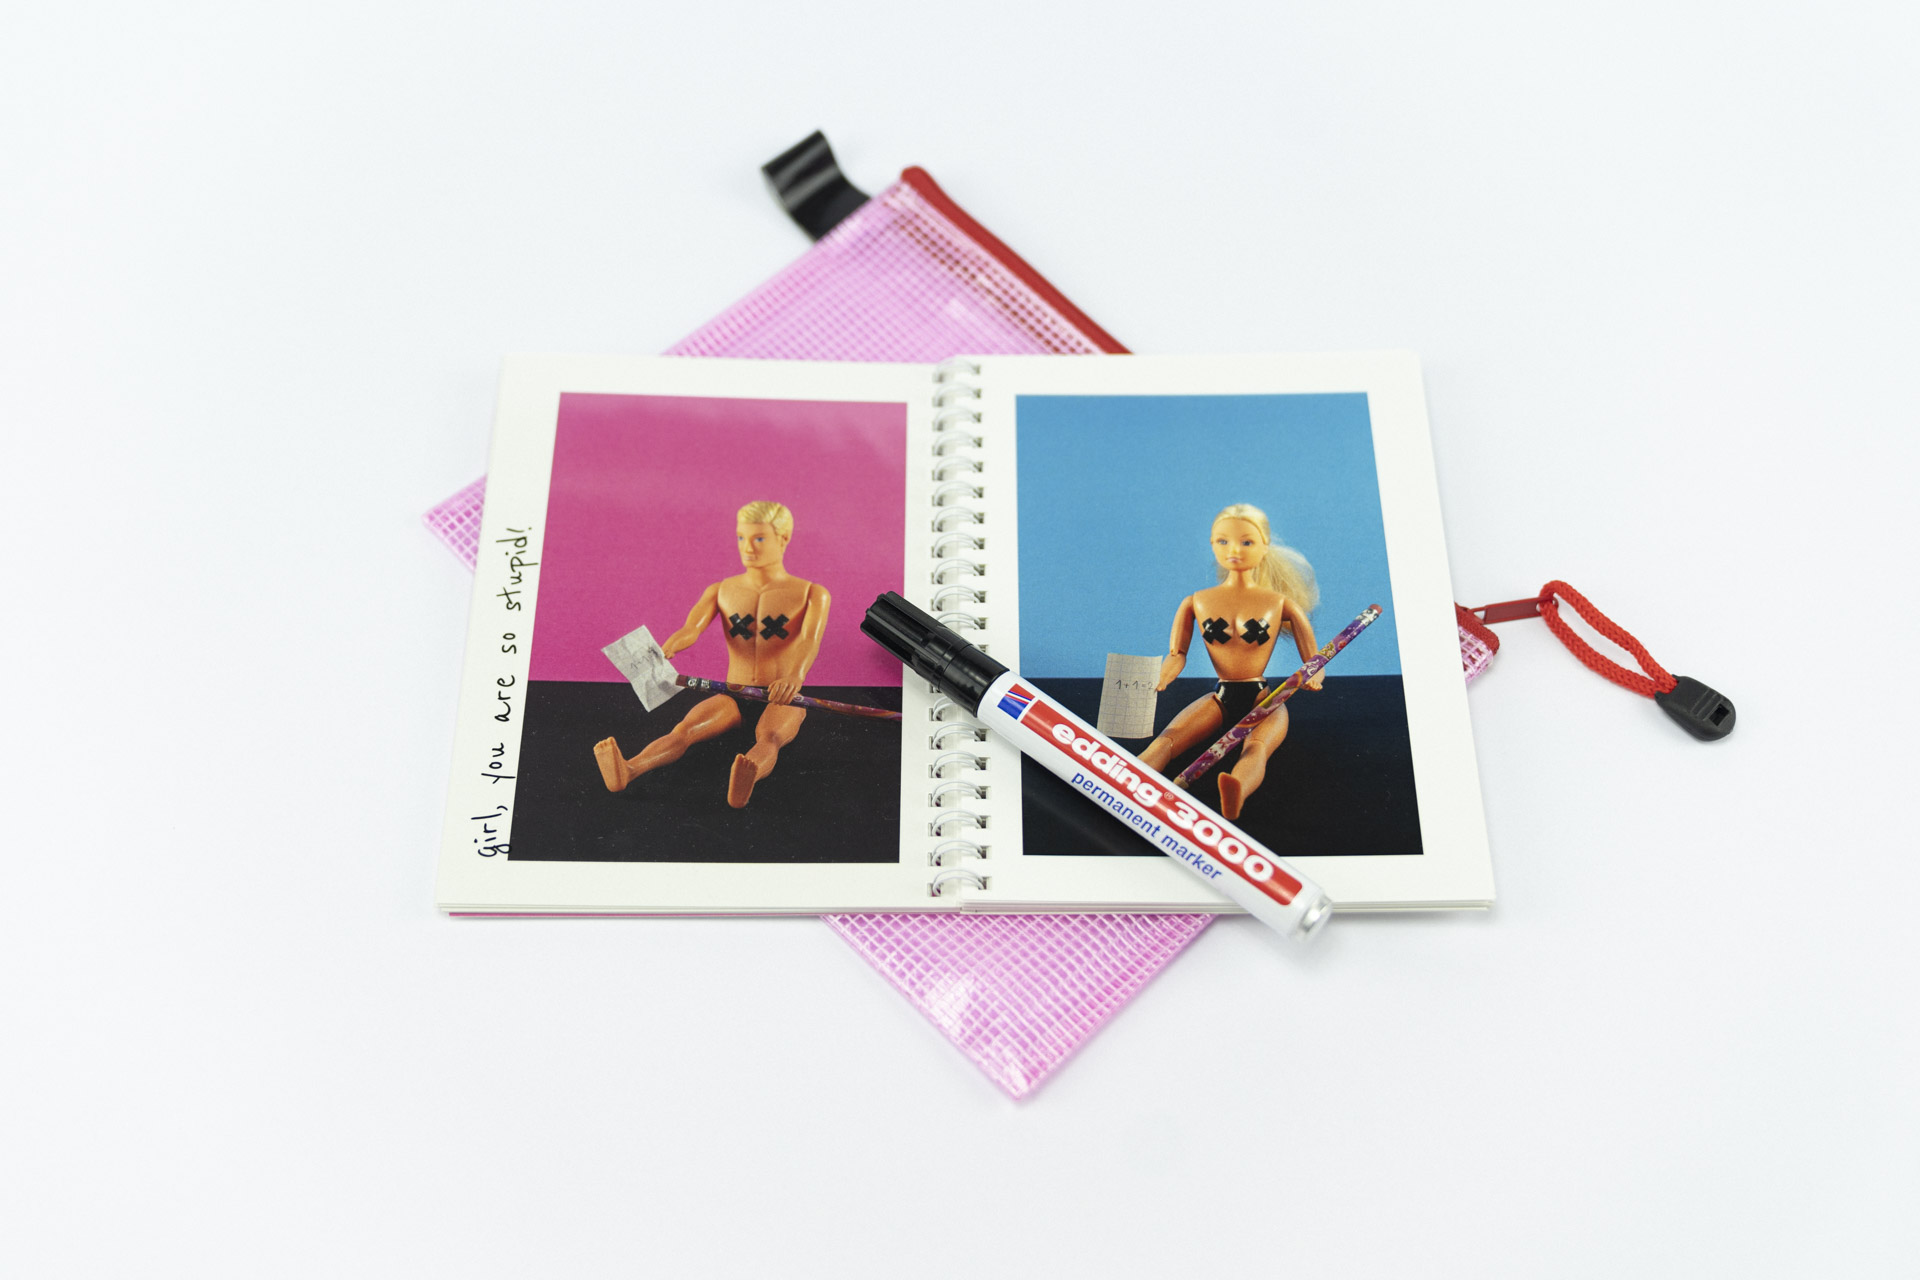 Detailaufnahme eines Fotobuchs mit dem Titel The Blond Stupid Boy auf weißem Hintergrund mit einer geöffneten Doppelseite mit jeweils vollflächigen Bildern von Barbie und Ken gegenübergestellt